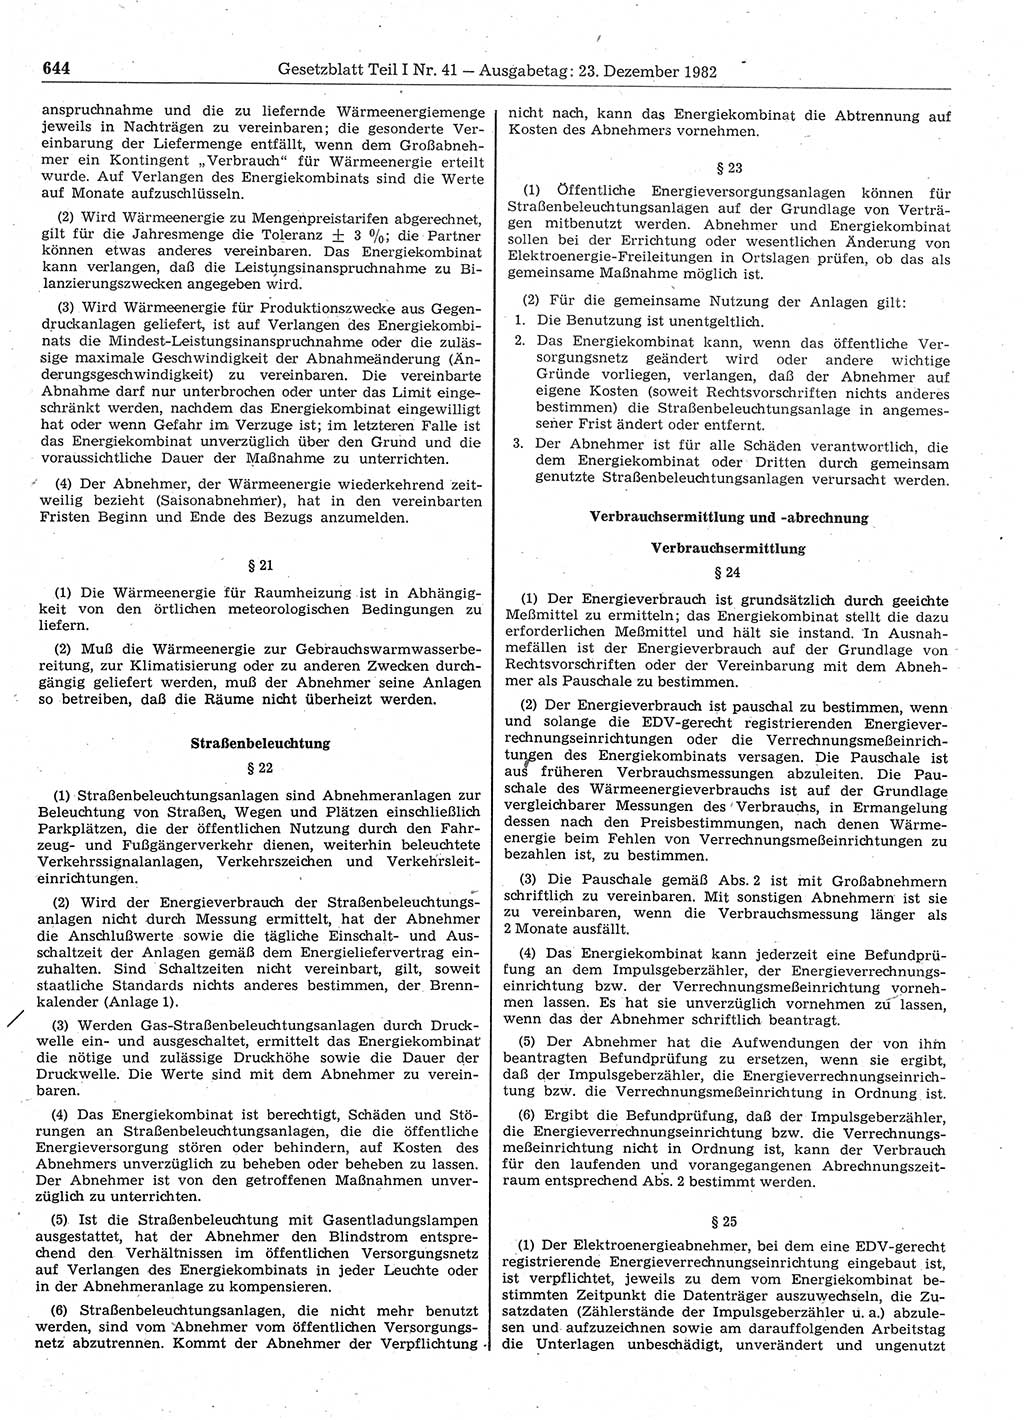 Gesetzblatt (GBl.) der Deutschen Demokratischen Republik (DDR) Teil Ⅰ 1982, Seite 644 (GBl. DDR Ⅰ 1982, S. 644)